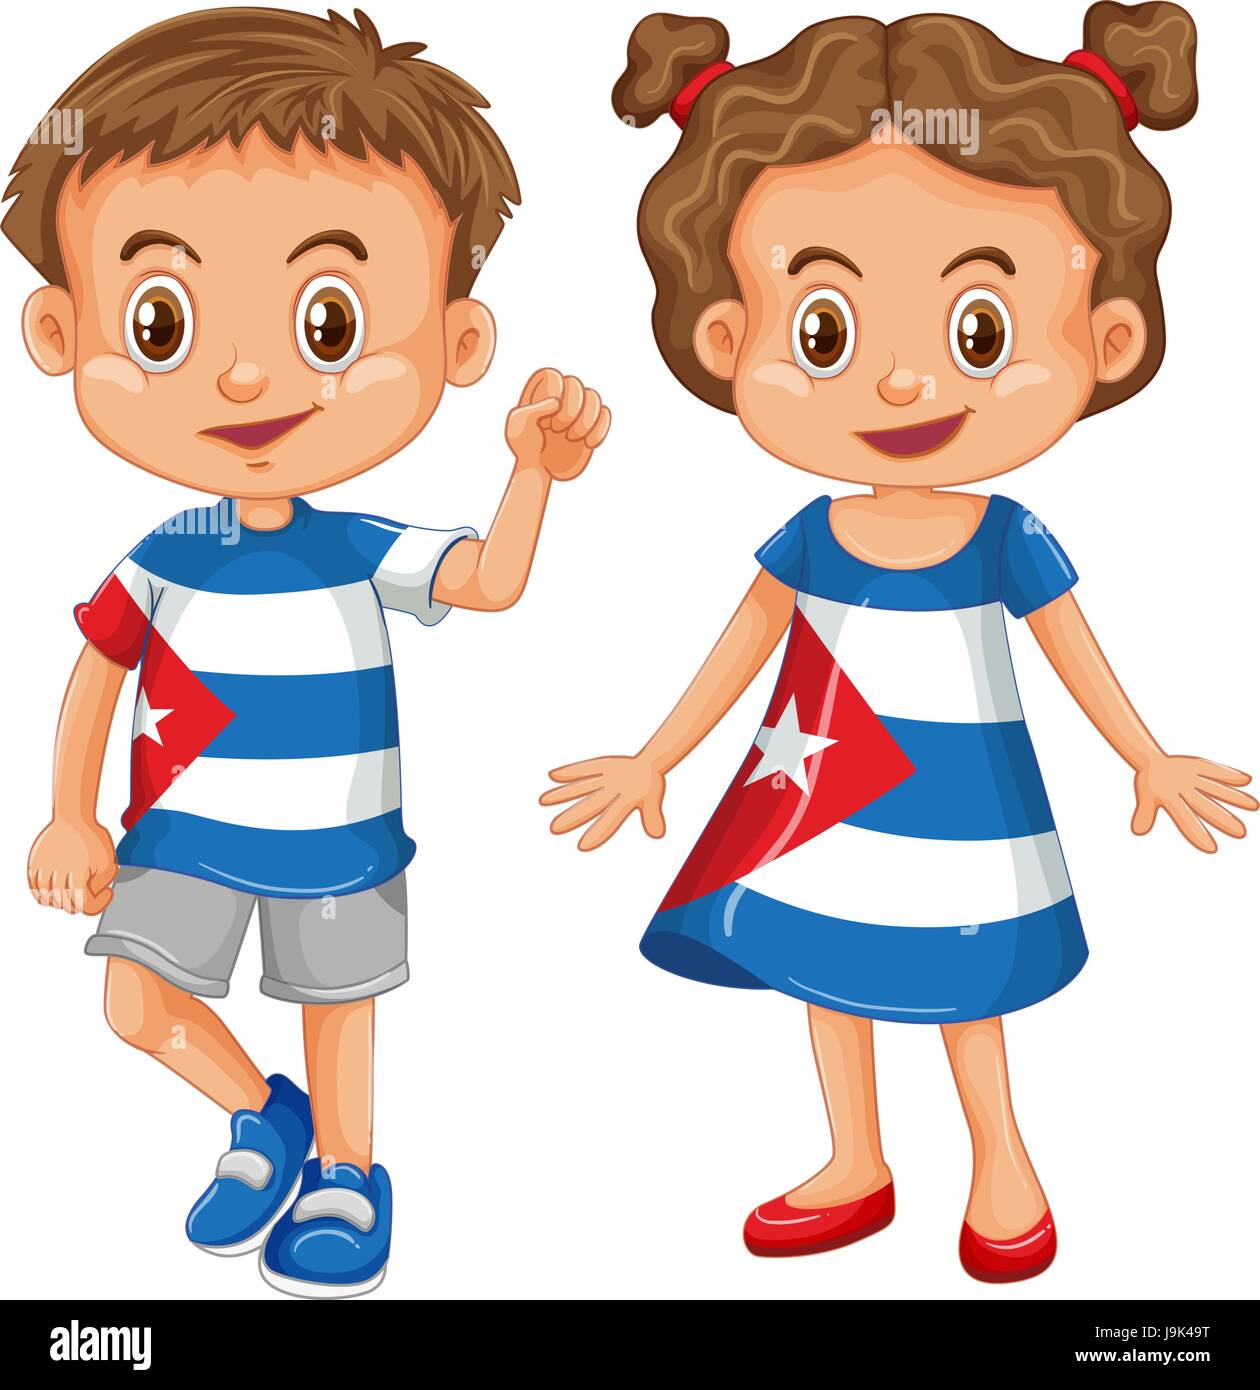 Chico y chica vistiendo camiseta con ilustración del Pabellón Cuba Ilustración del Vector